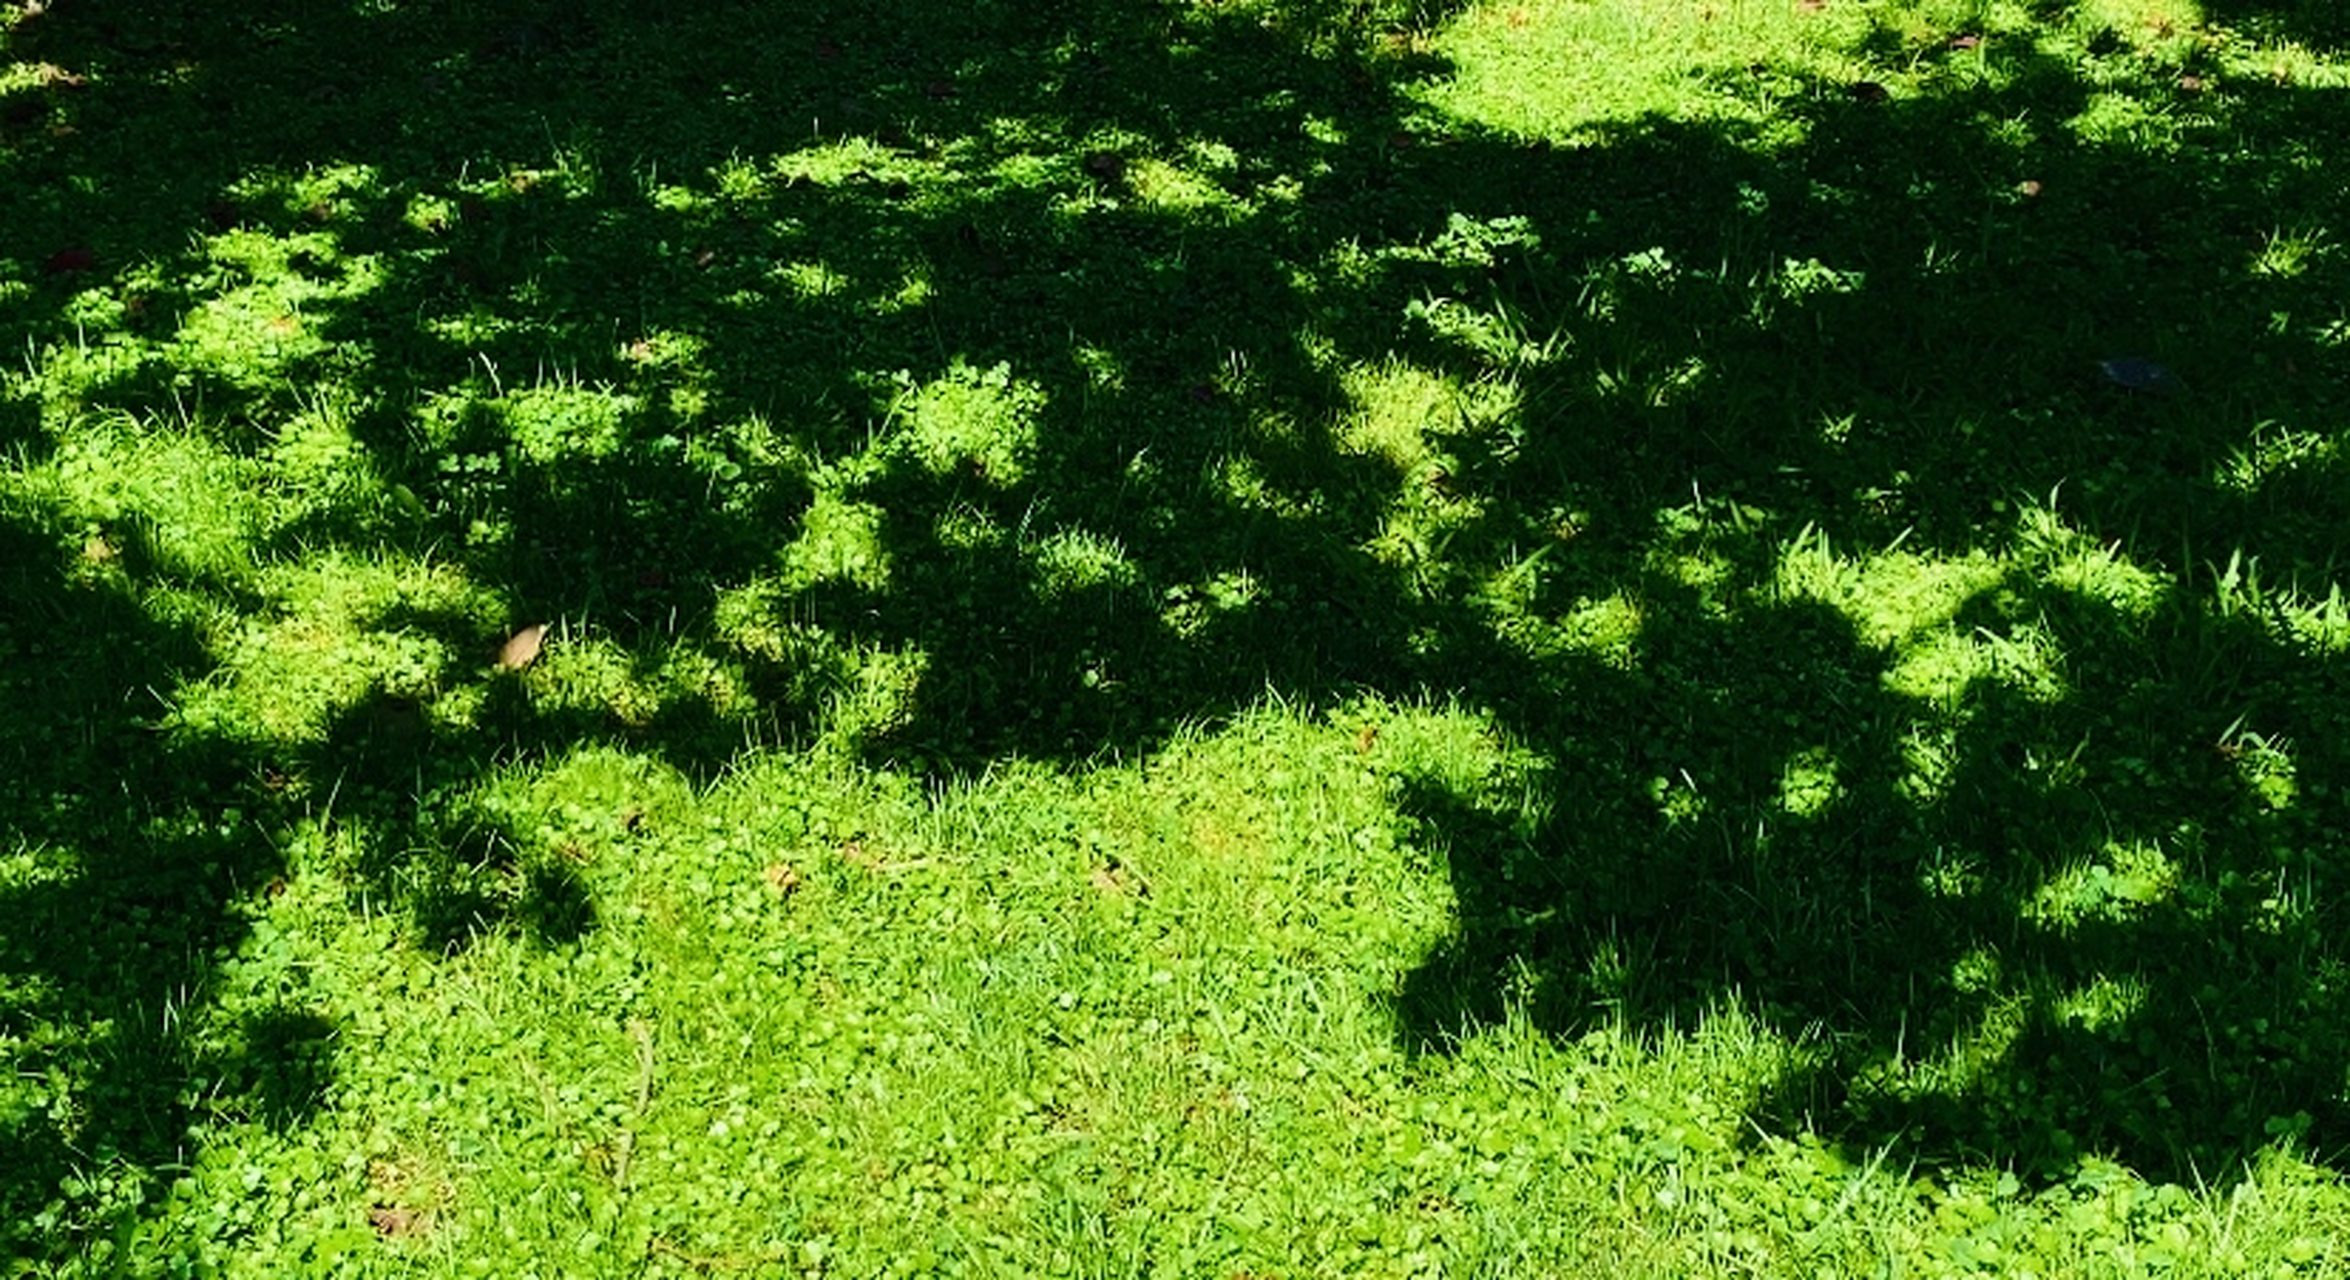 光影  和煦的阳光款款而来,透过树叶的缝隙倾泻而下,在地面形成了斑驳